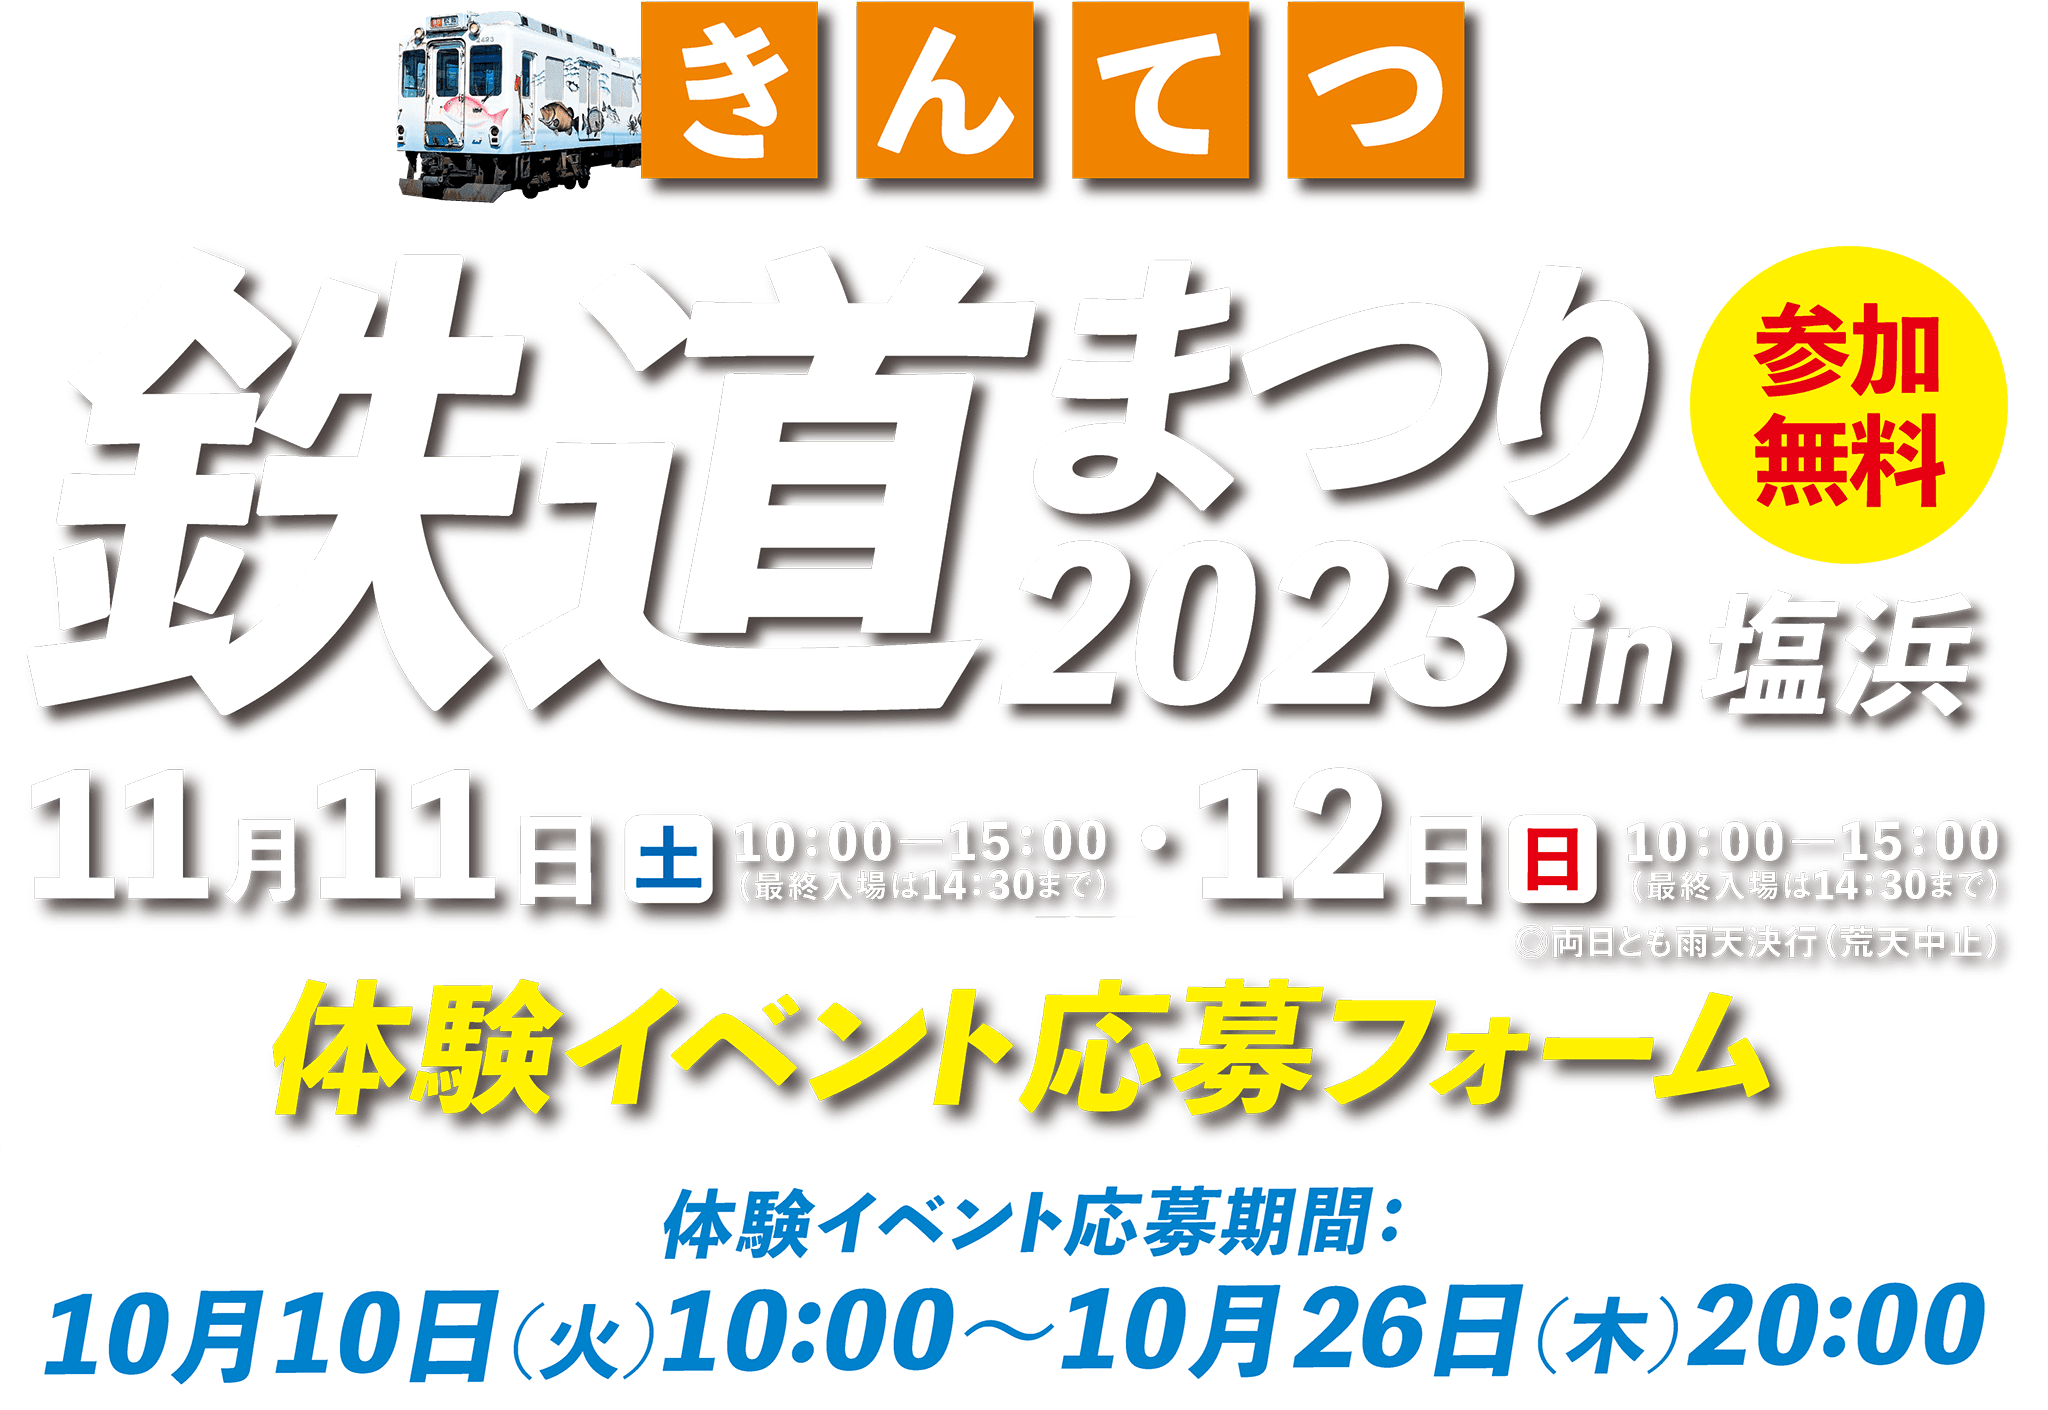 2023きんてつ鉄道まつり 体験イベント応募フォーム